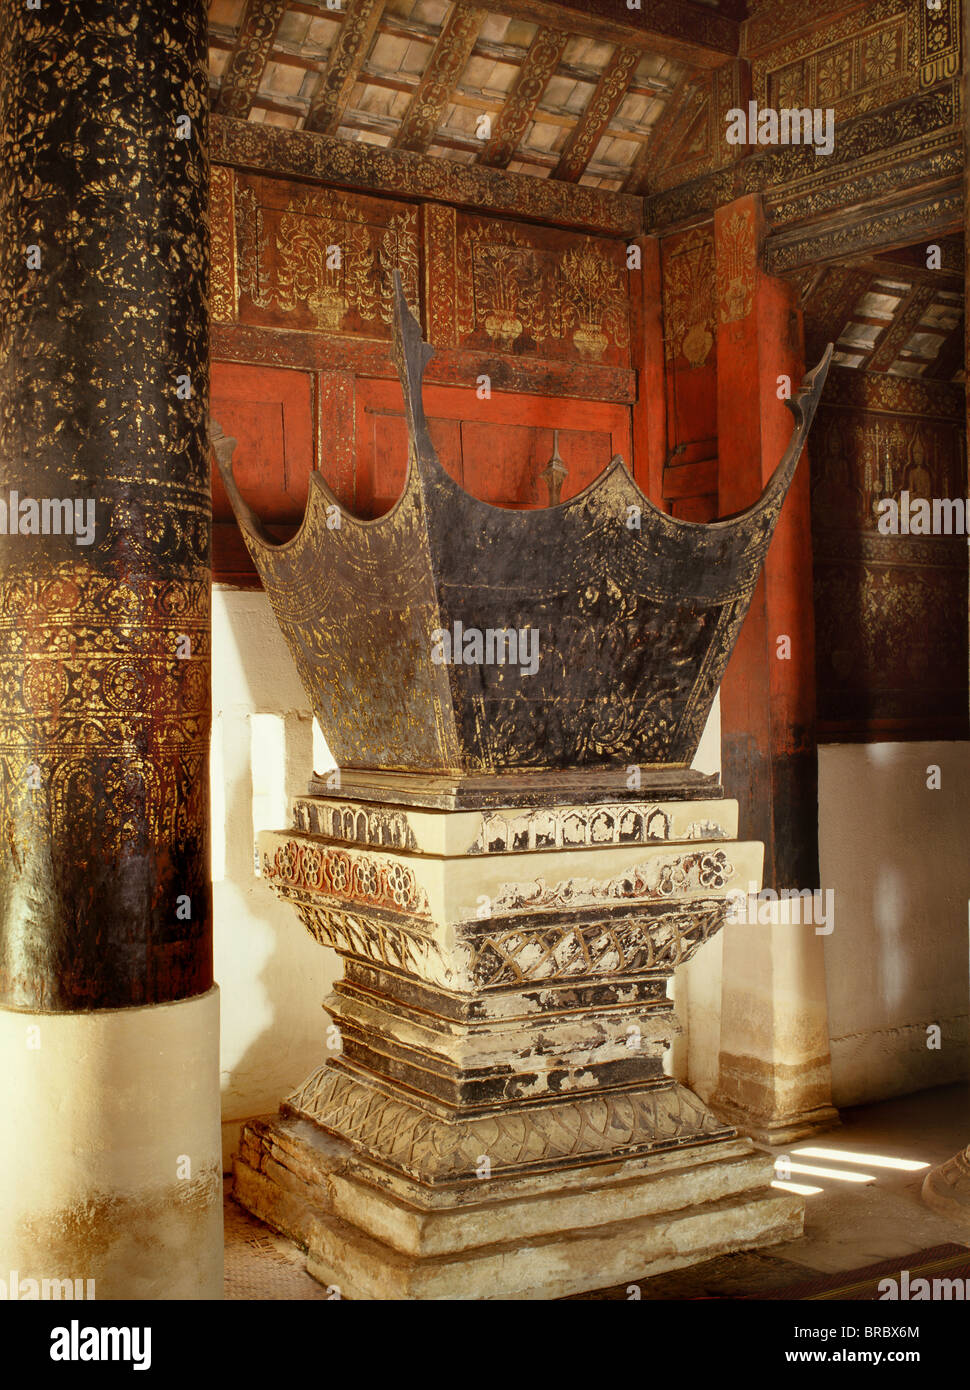 Chaire à prêcher, Wat Pong Yang Kok, un exemple classique de Lanna (nord de la Thaïlande) de l'artisanat et l'architecture de Lampang, Thaïlande Banque D'Images